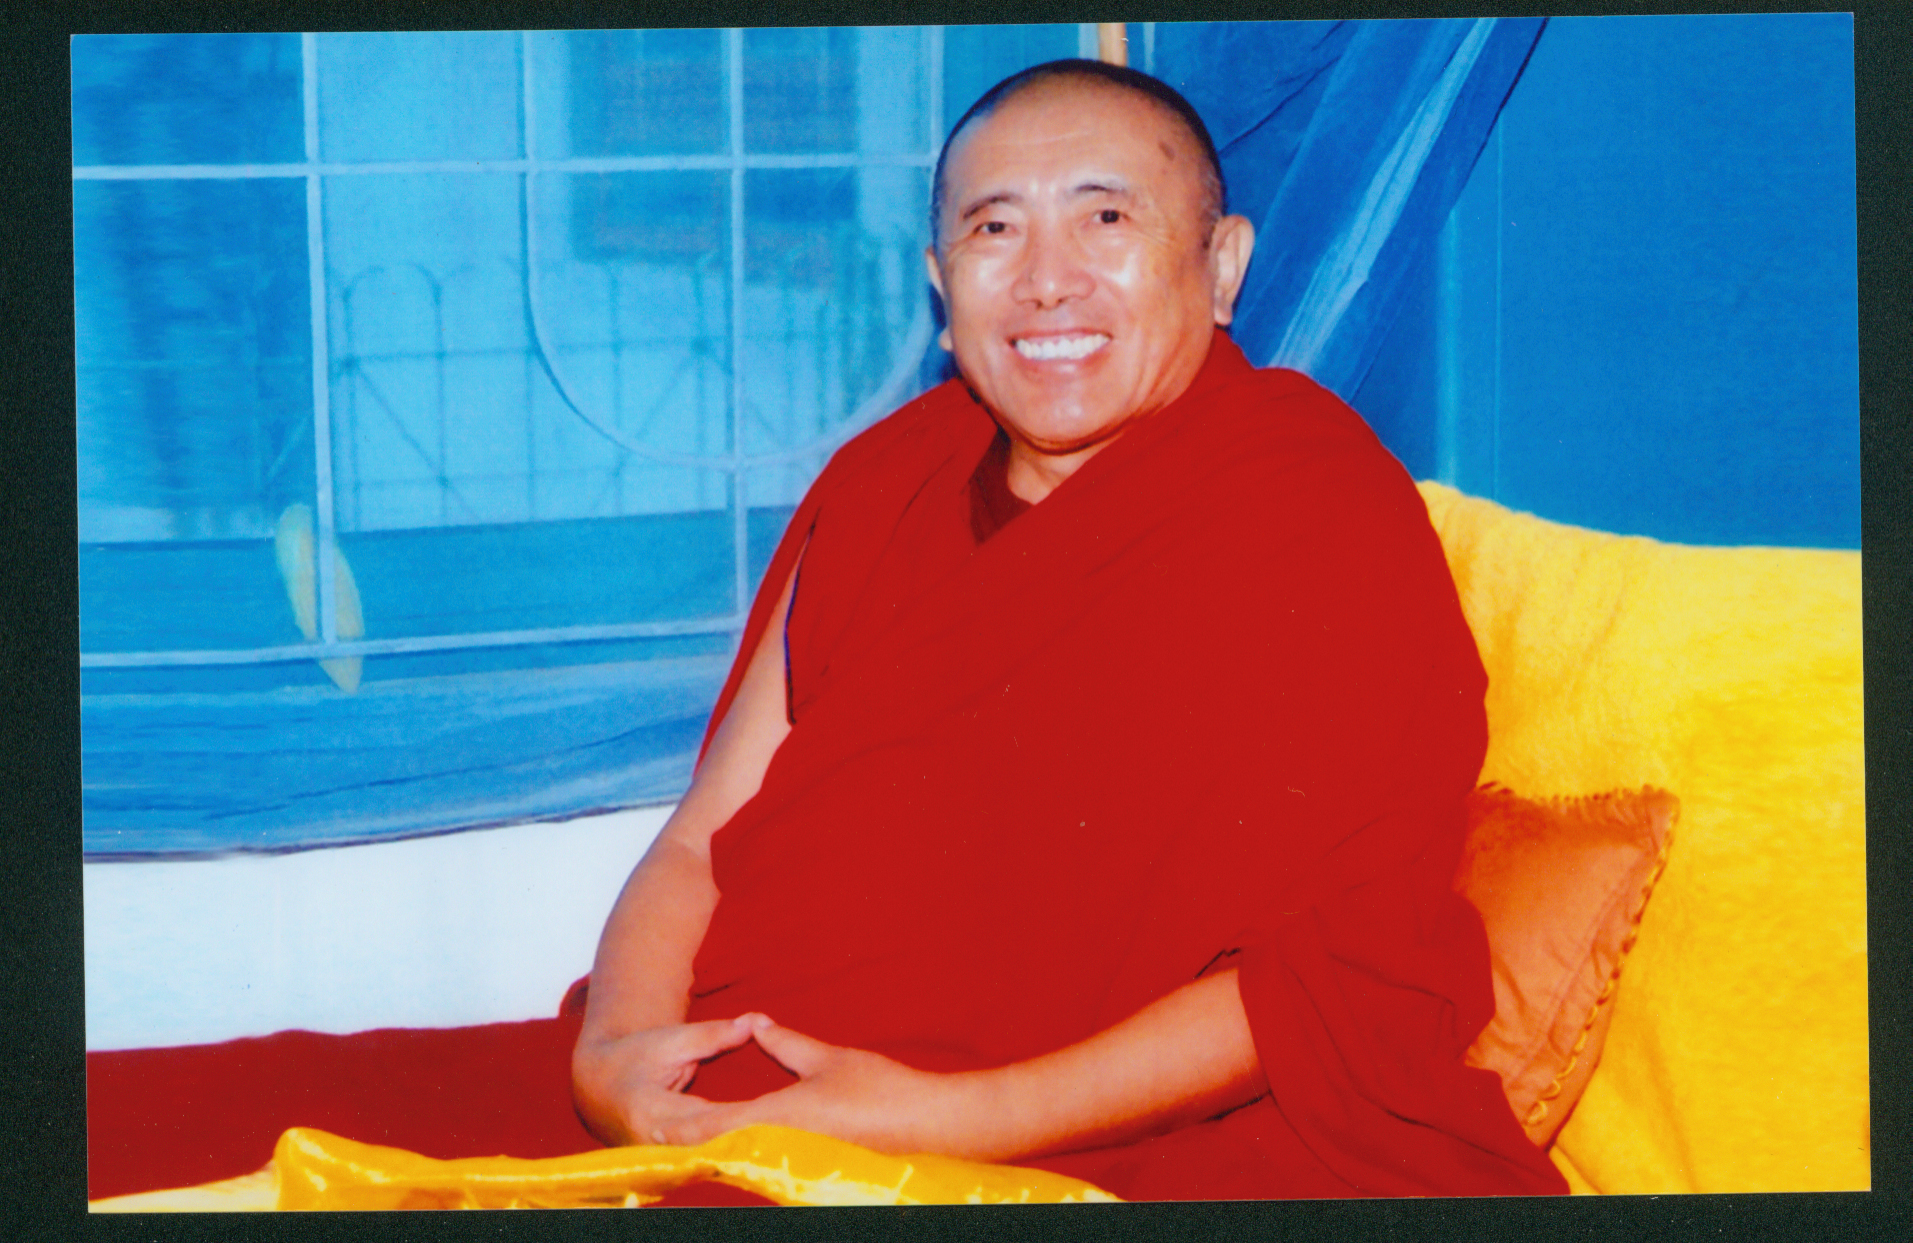 Geshe Namgyal Wangchen